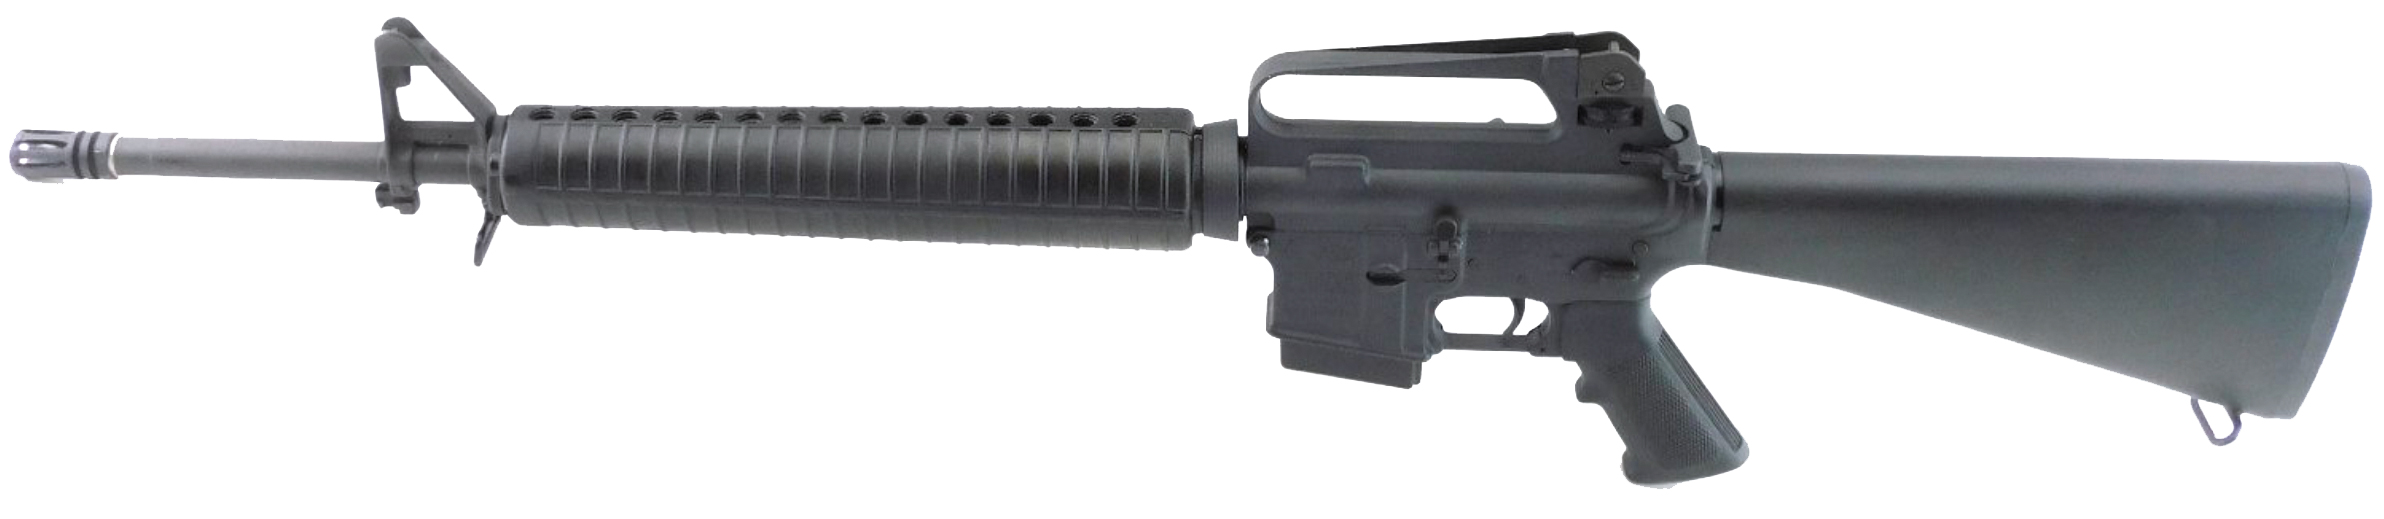 Sporter Target Model Rifle (Model #6551)